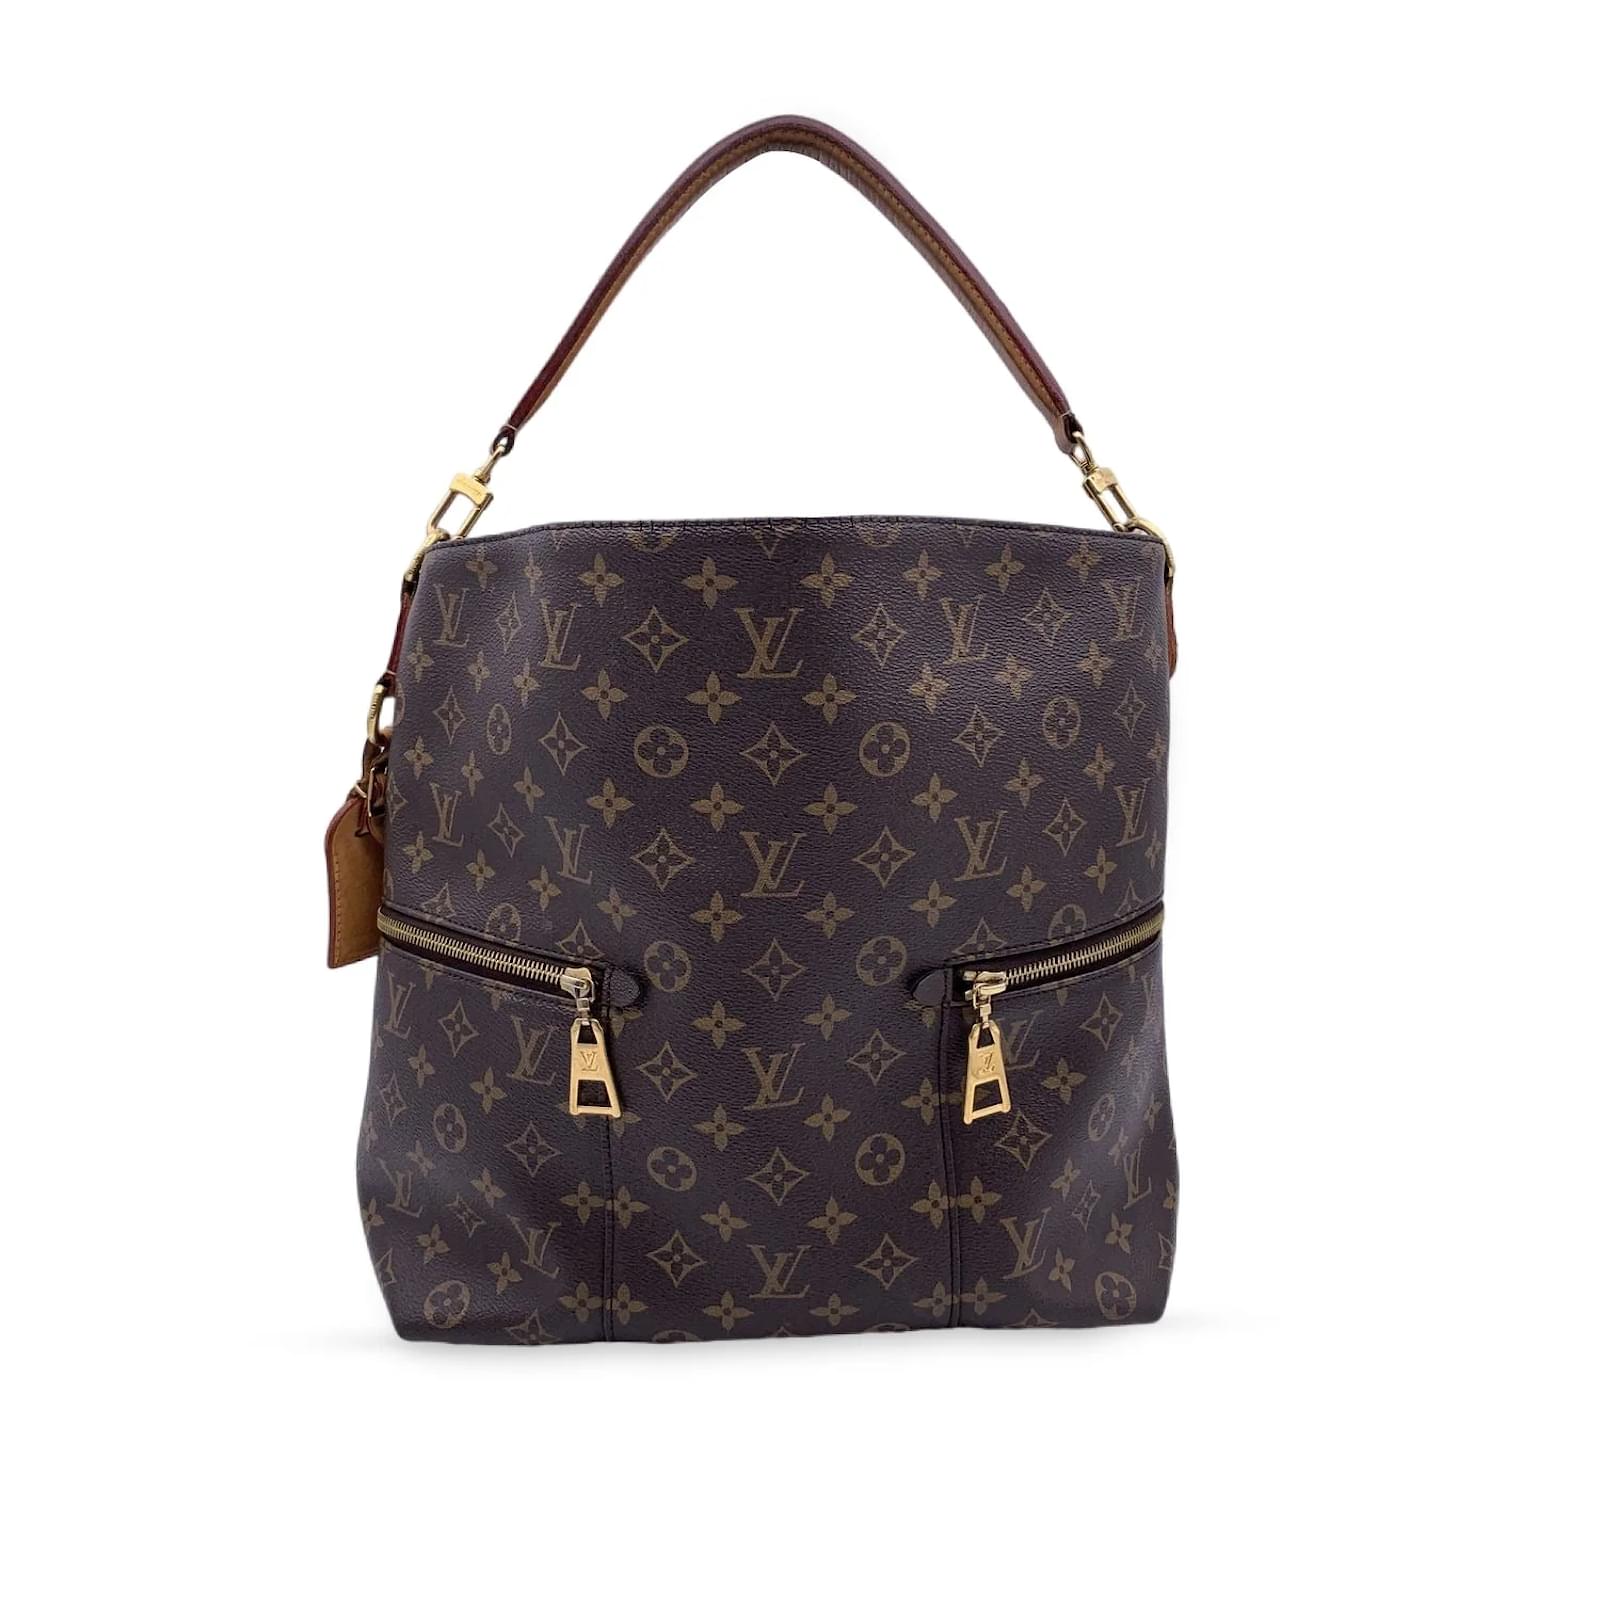 Louis Vuitton, Bags, Louis Vuitton Melie